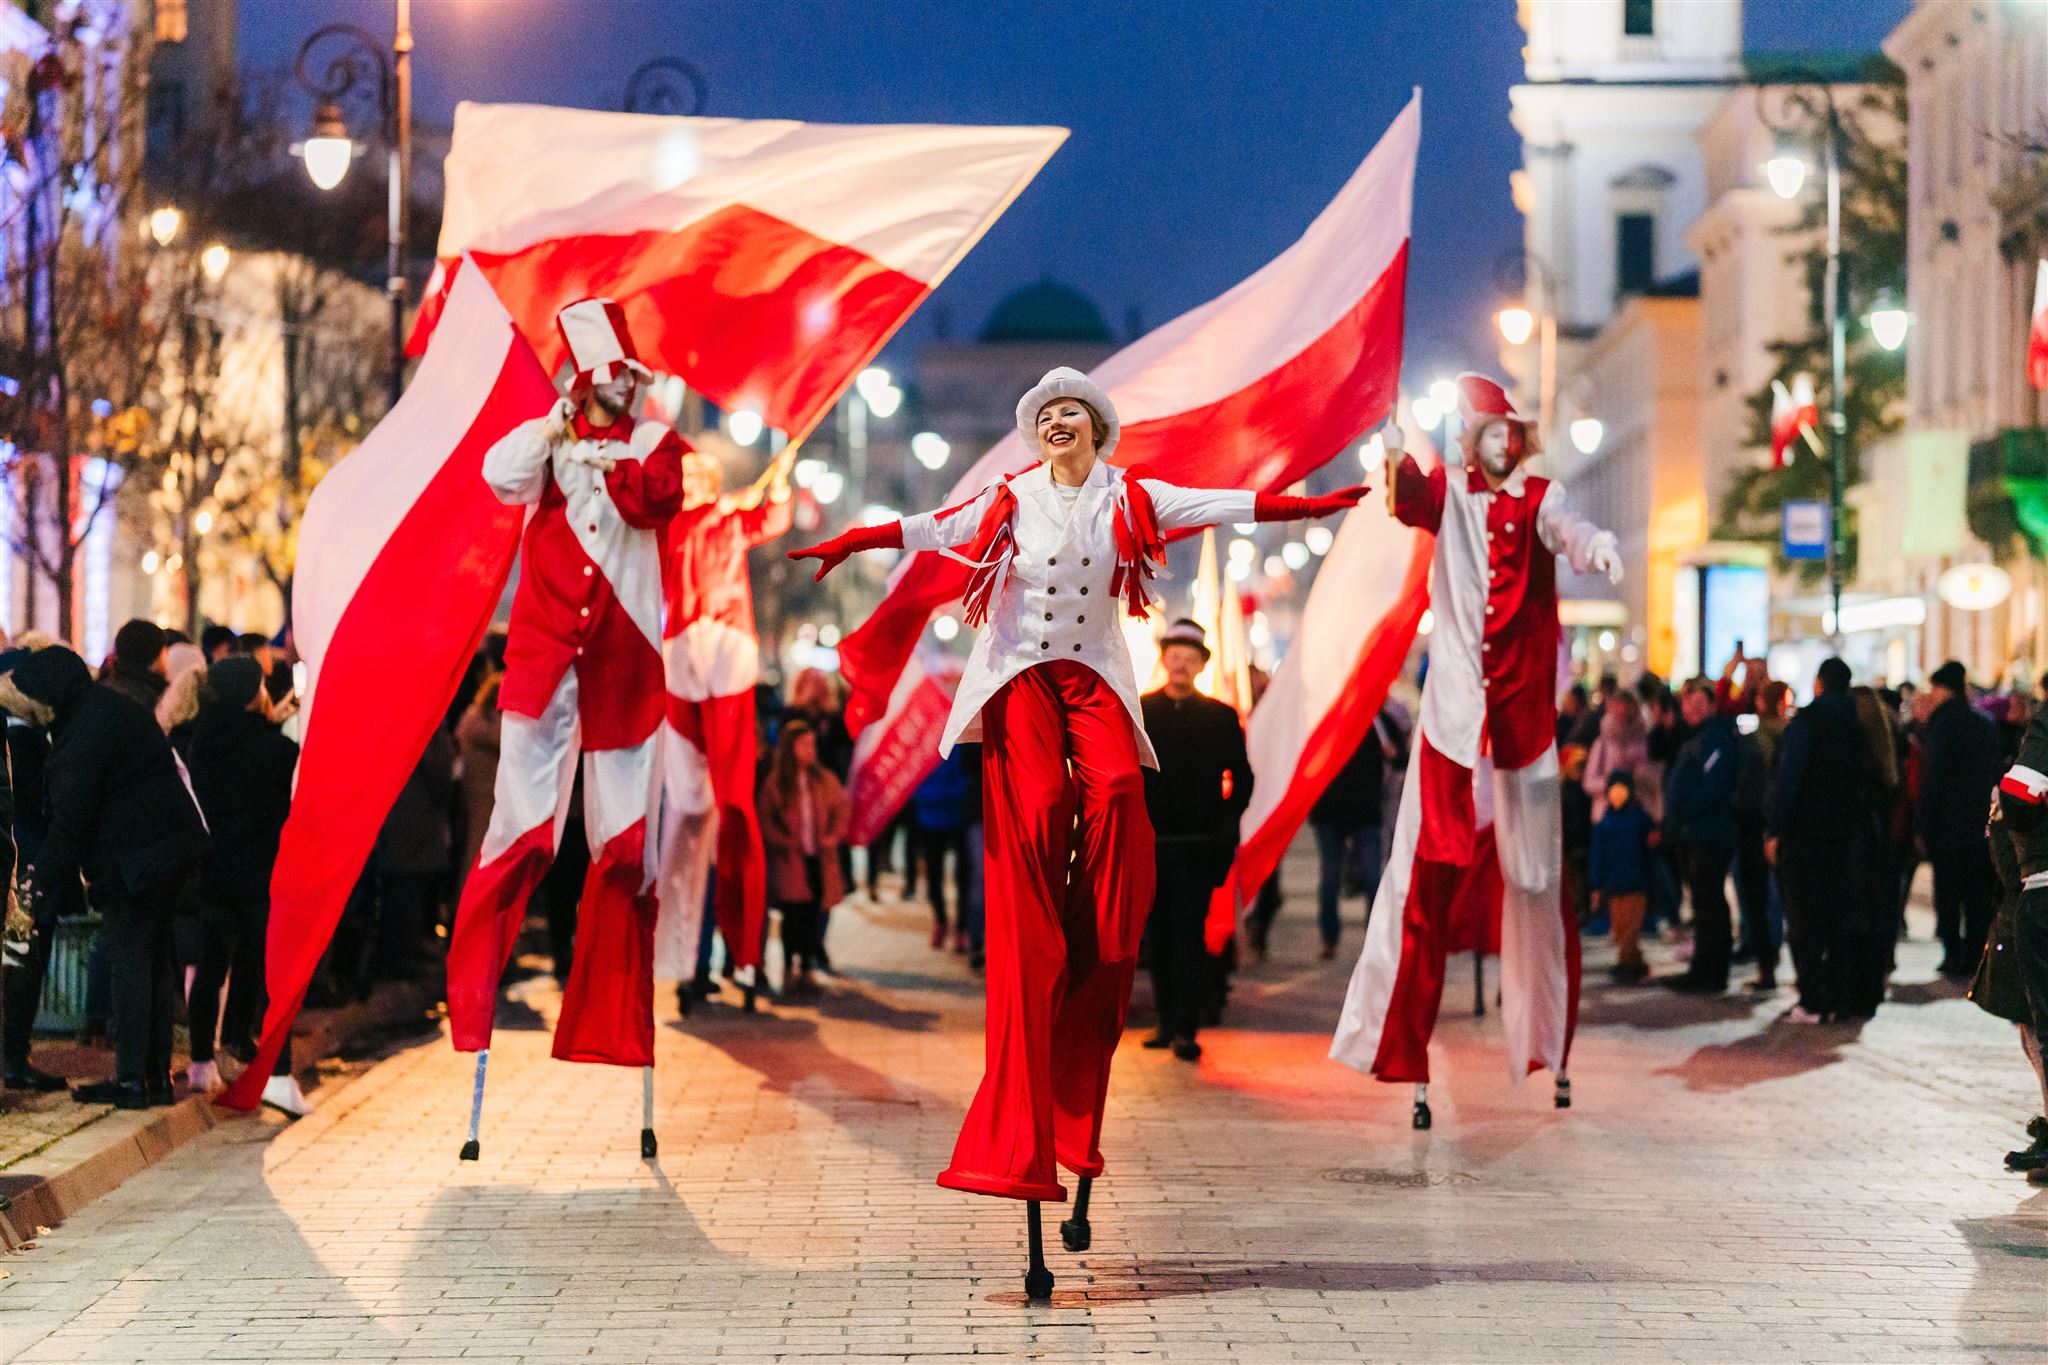 Grupa szczudlarzy krocząca środkiem ulicy podczas Festiwalu Niepodległa na Krakowskim Przedmieściu. Osoby na szczudłach niosą wielkie flagi Polski i są ubrane na biało i czerwono.